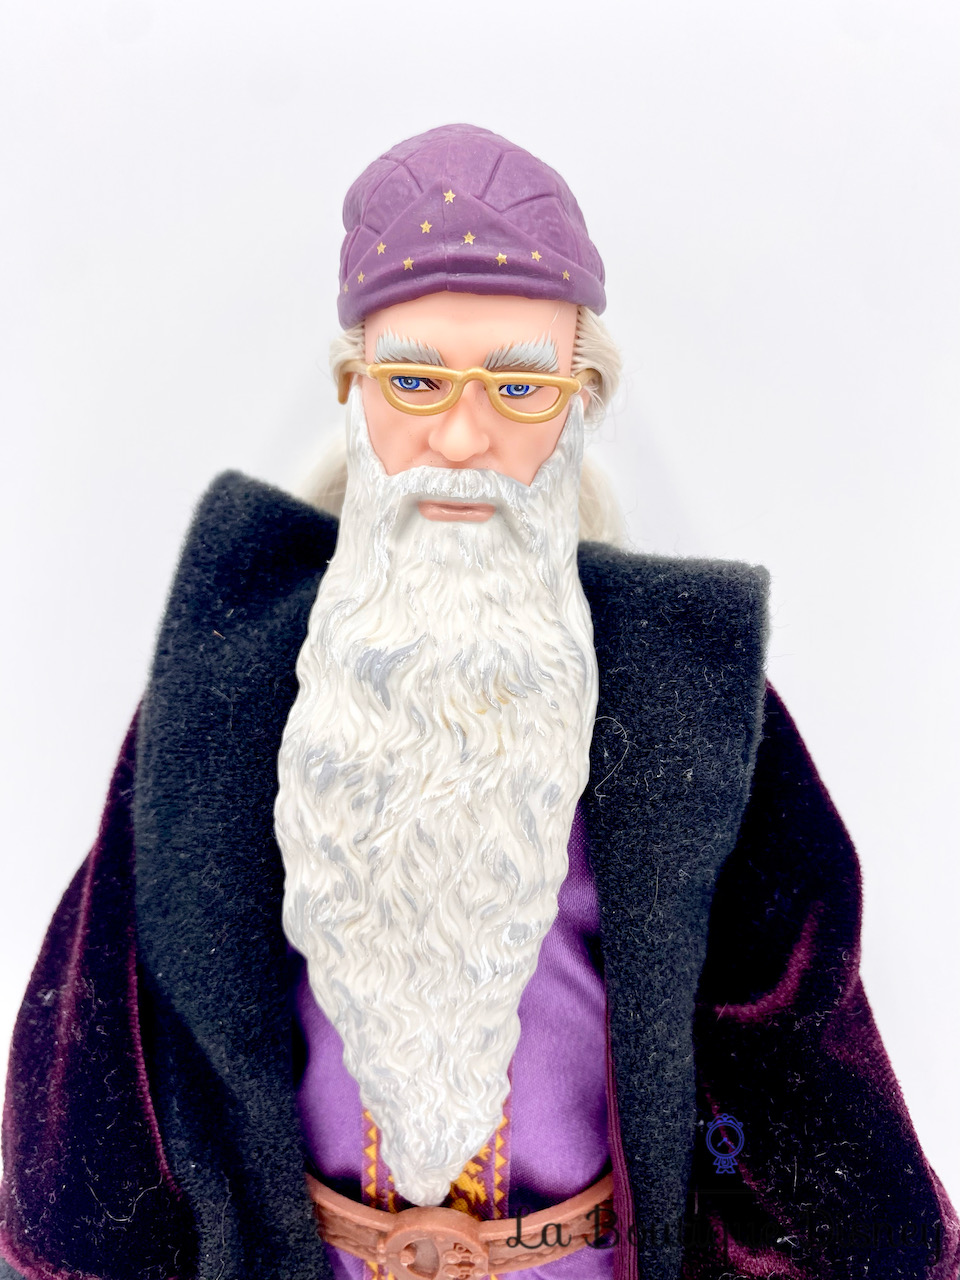 poupée-albus-dumbledore-harry-potter-magicien-sorcier-mannequin-2